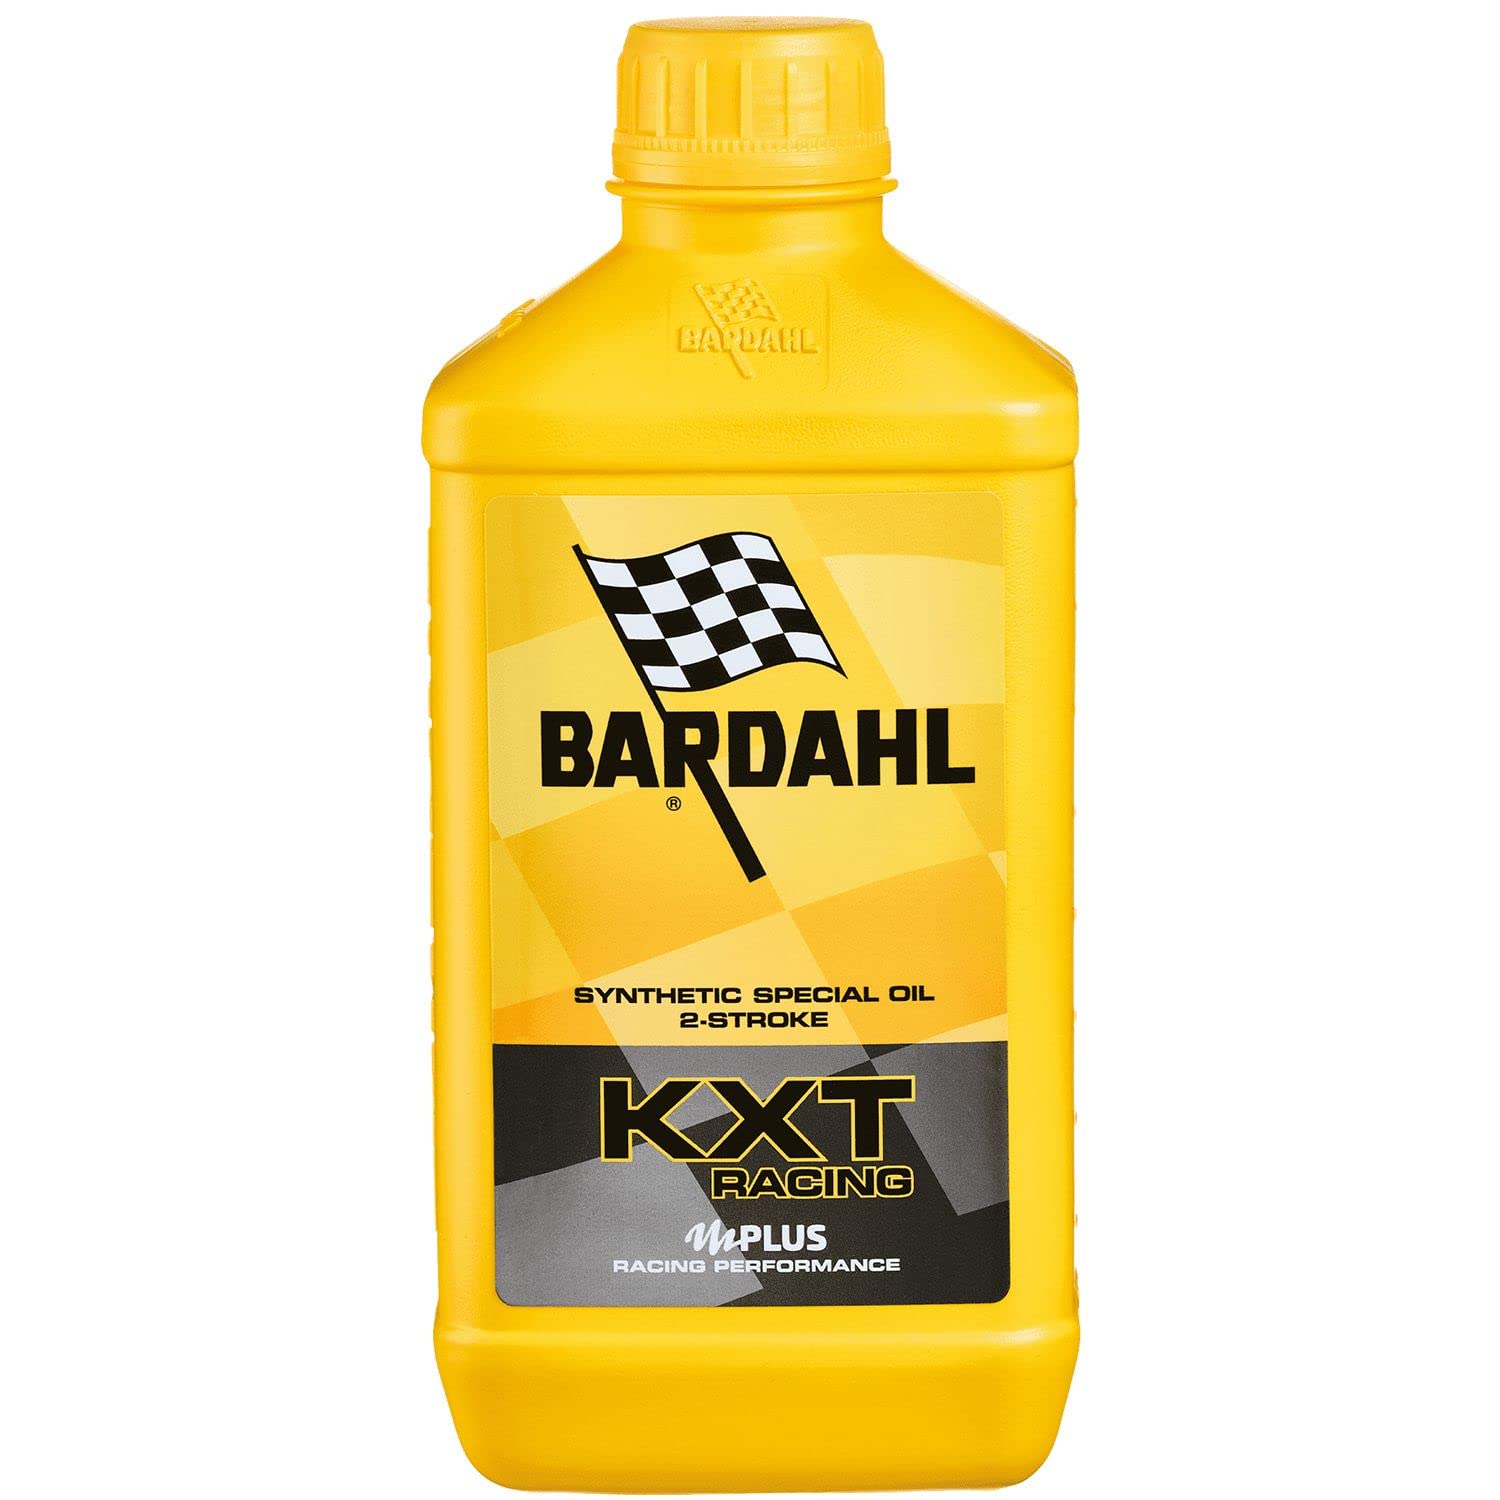 Bardahl - Öl mit Technologie KXT Racing für 2-Takt-Motoren, erhöht die Motorleistung, kann bei niedriger Dosierung verwendet werden, 1 Liter von Bardahl